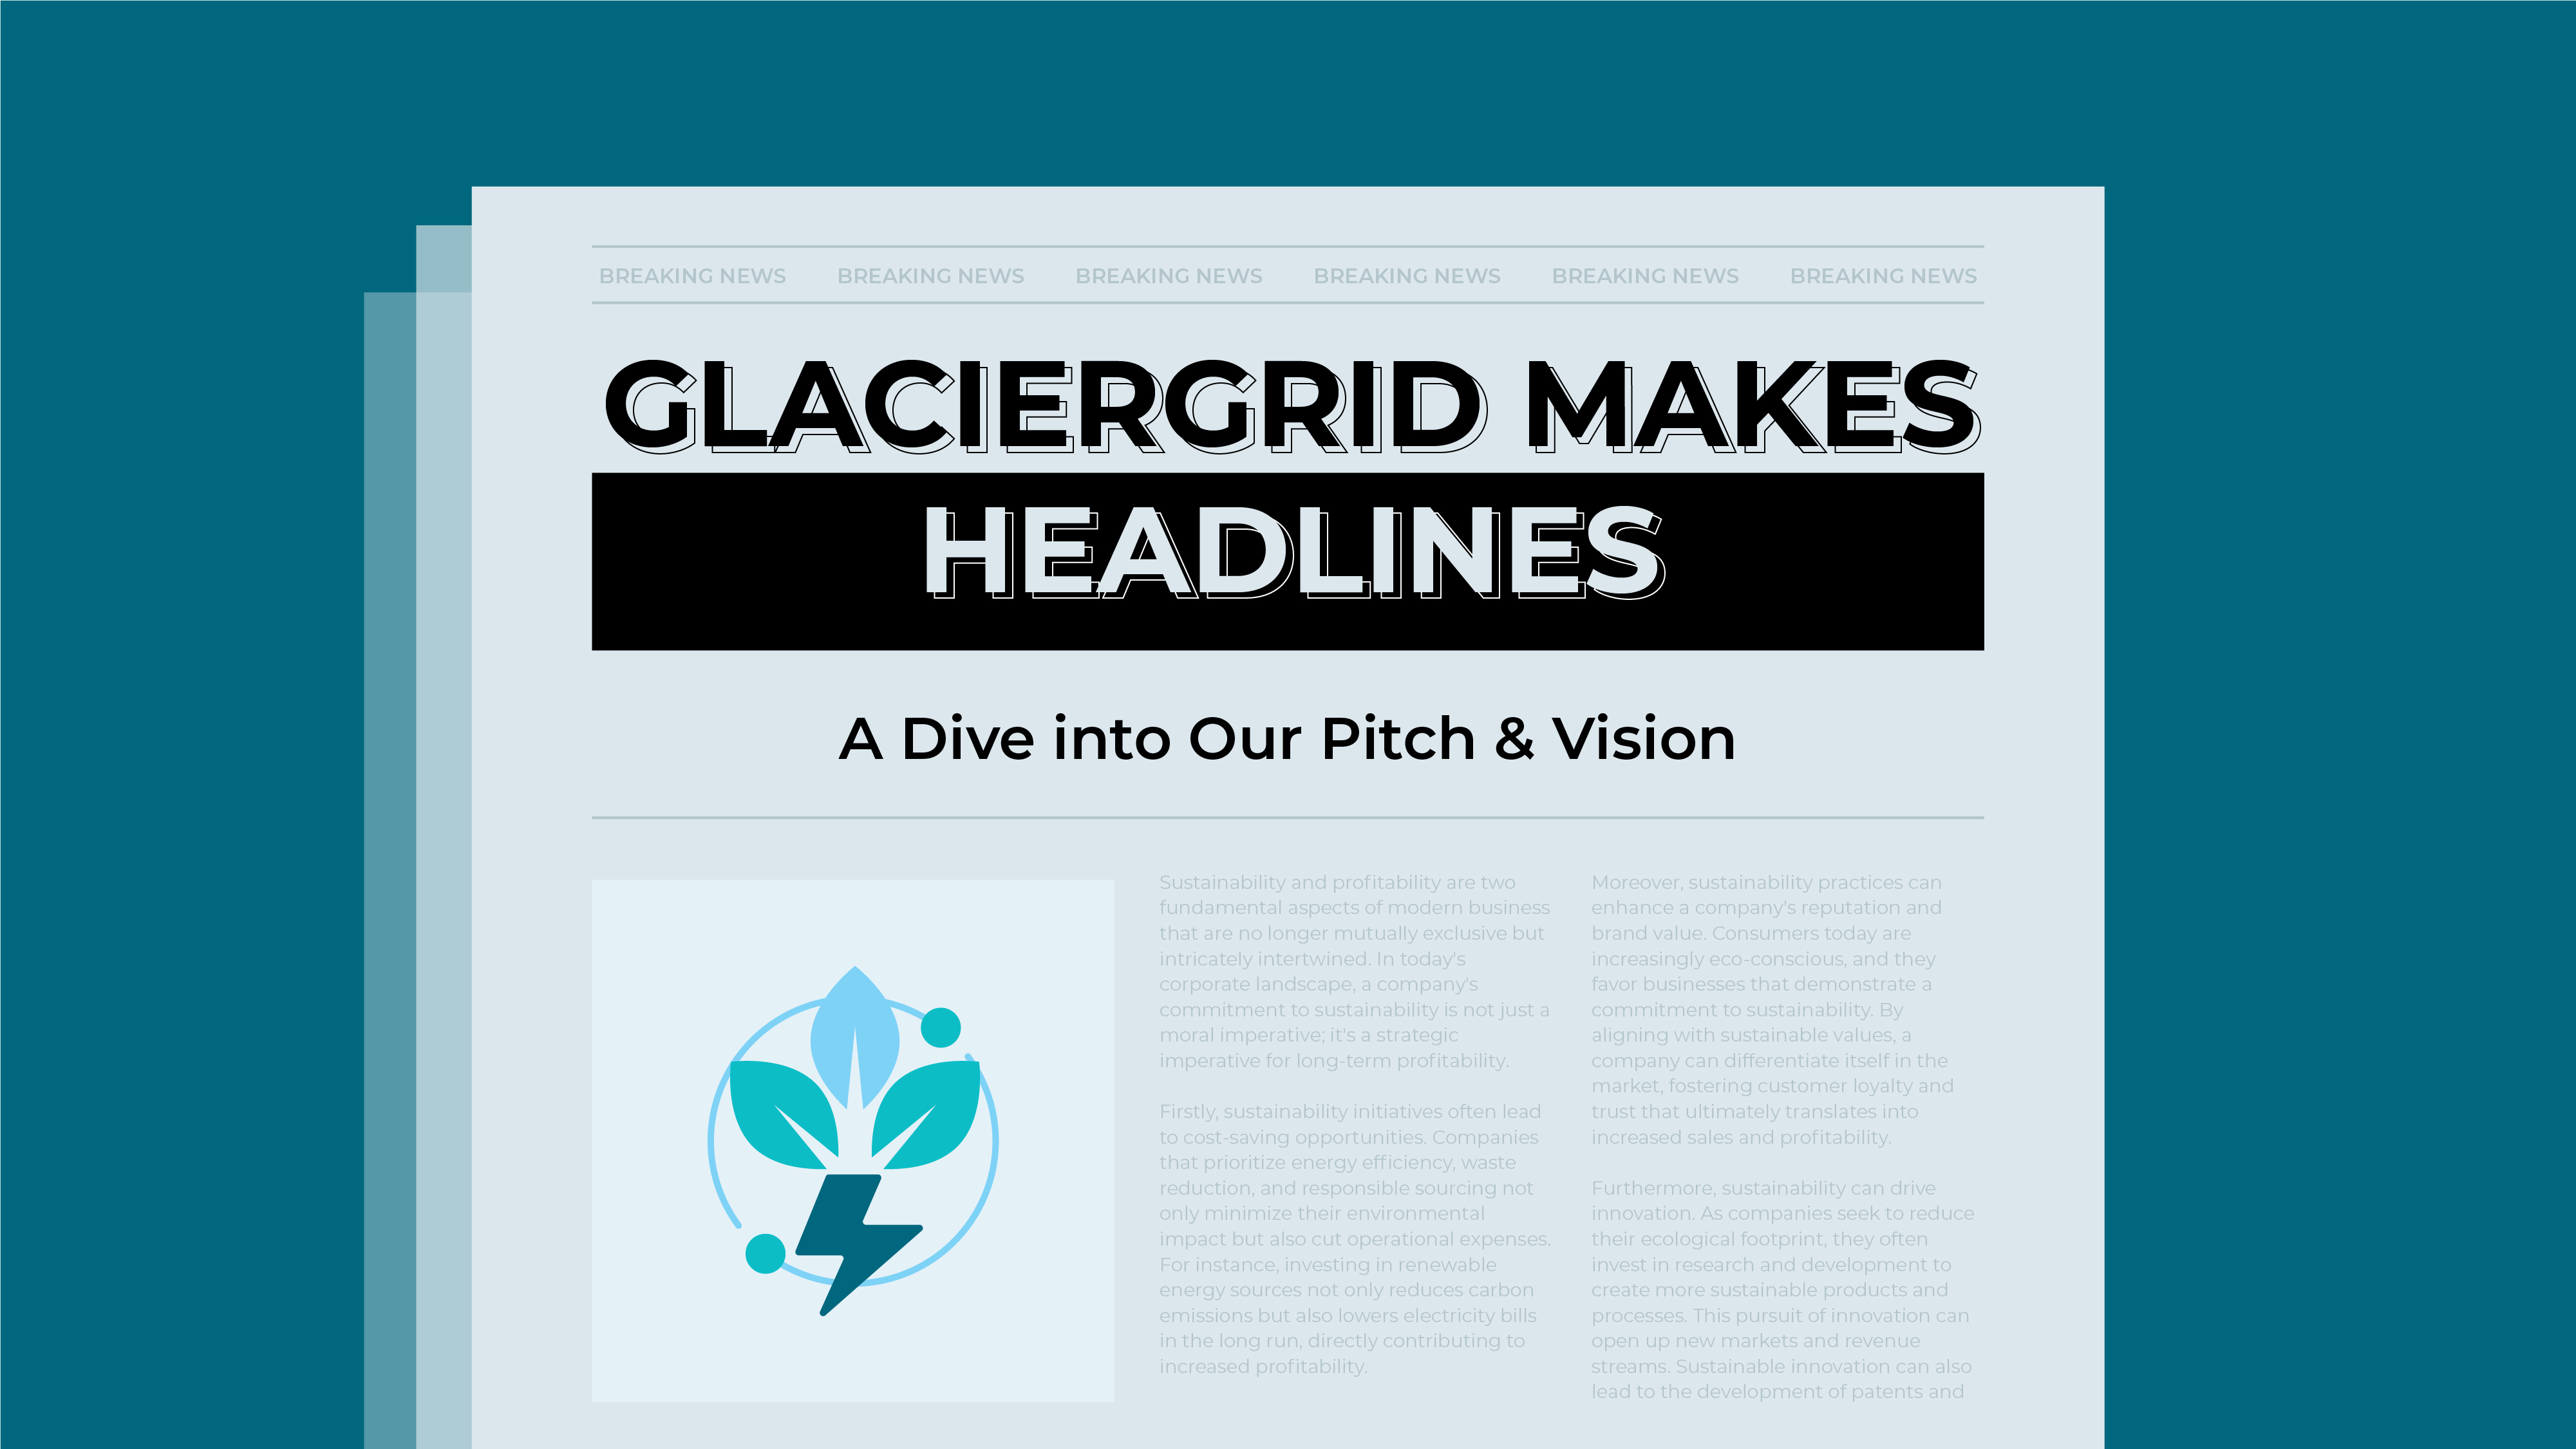 GlacierGrid Makes Headlines